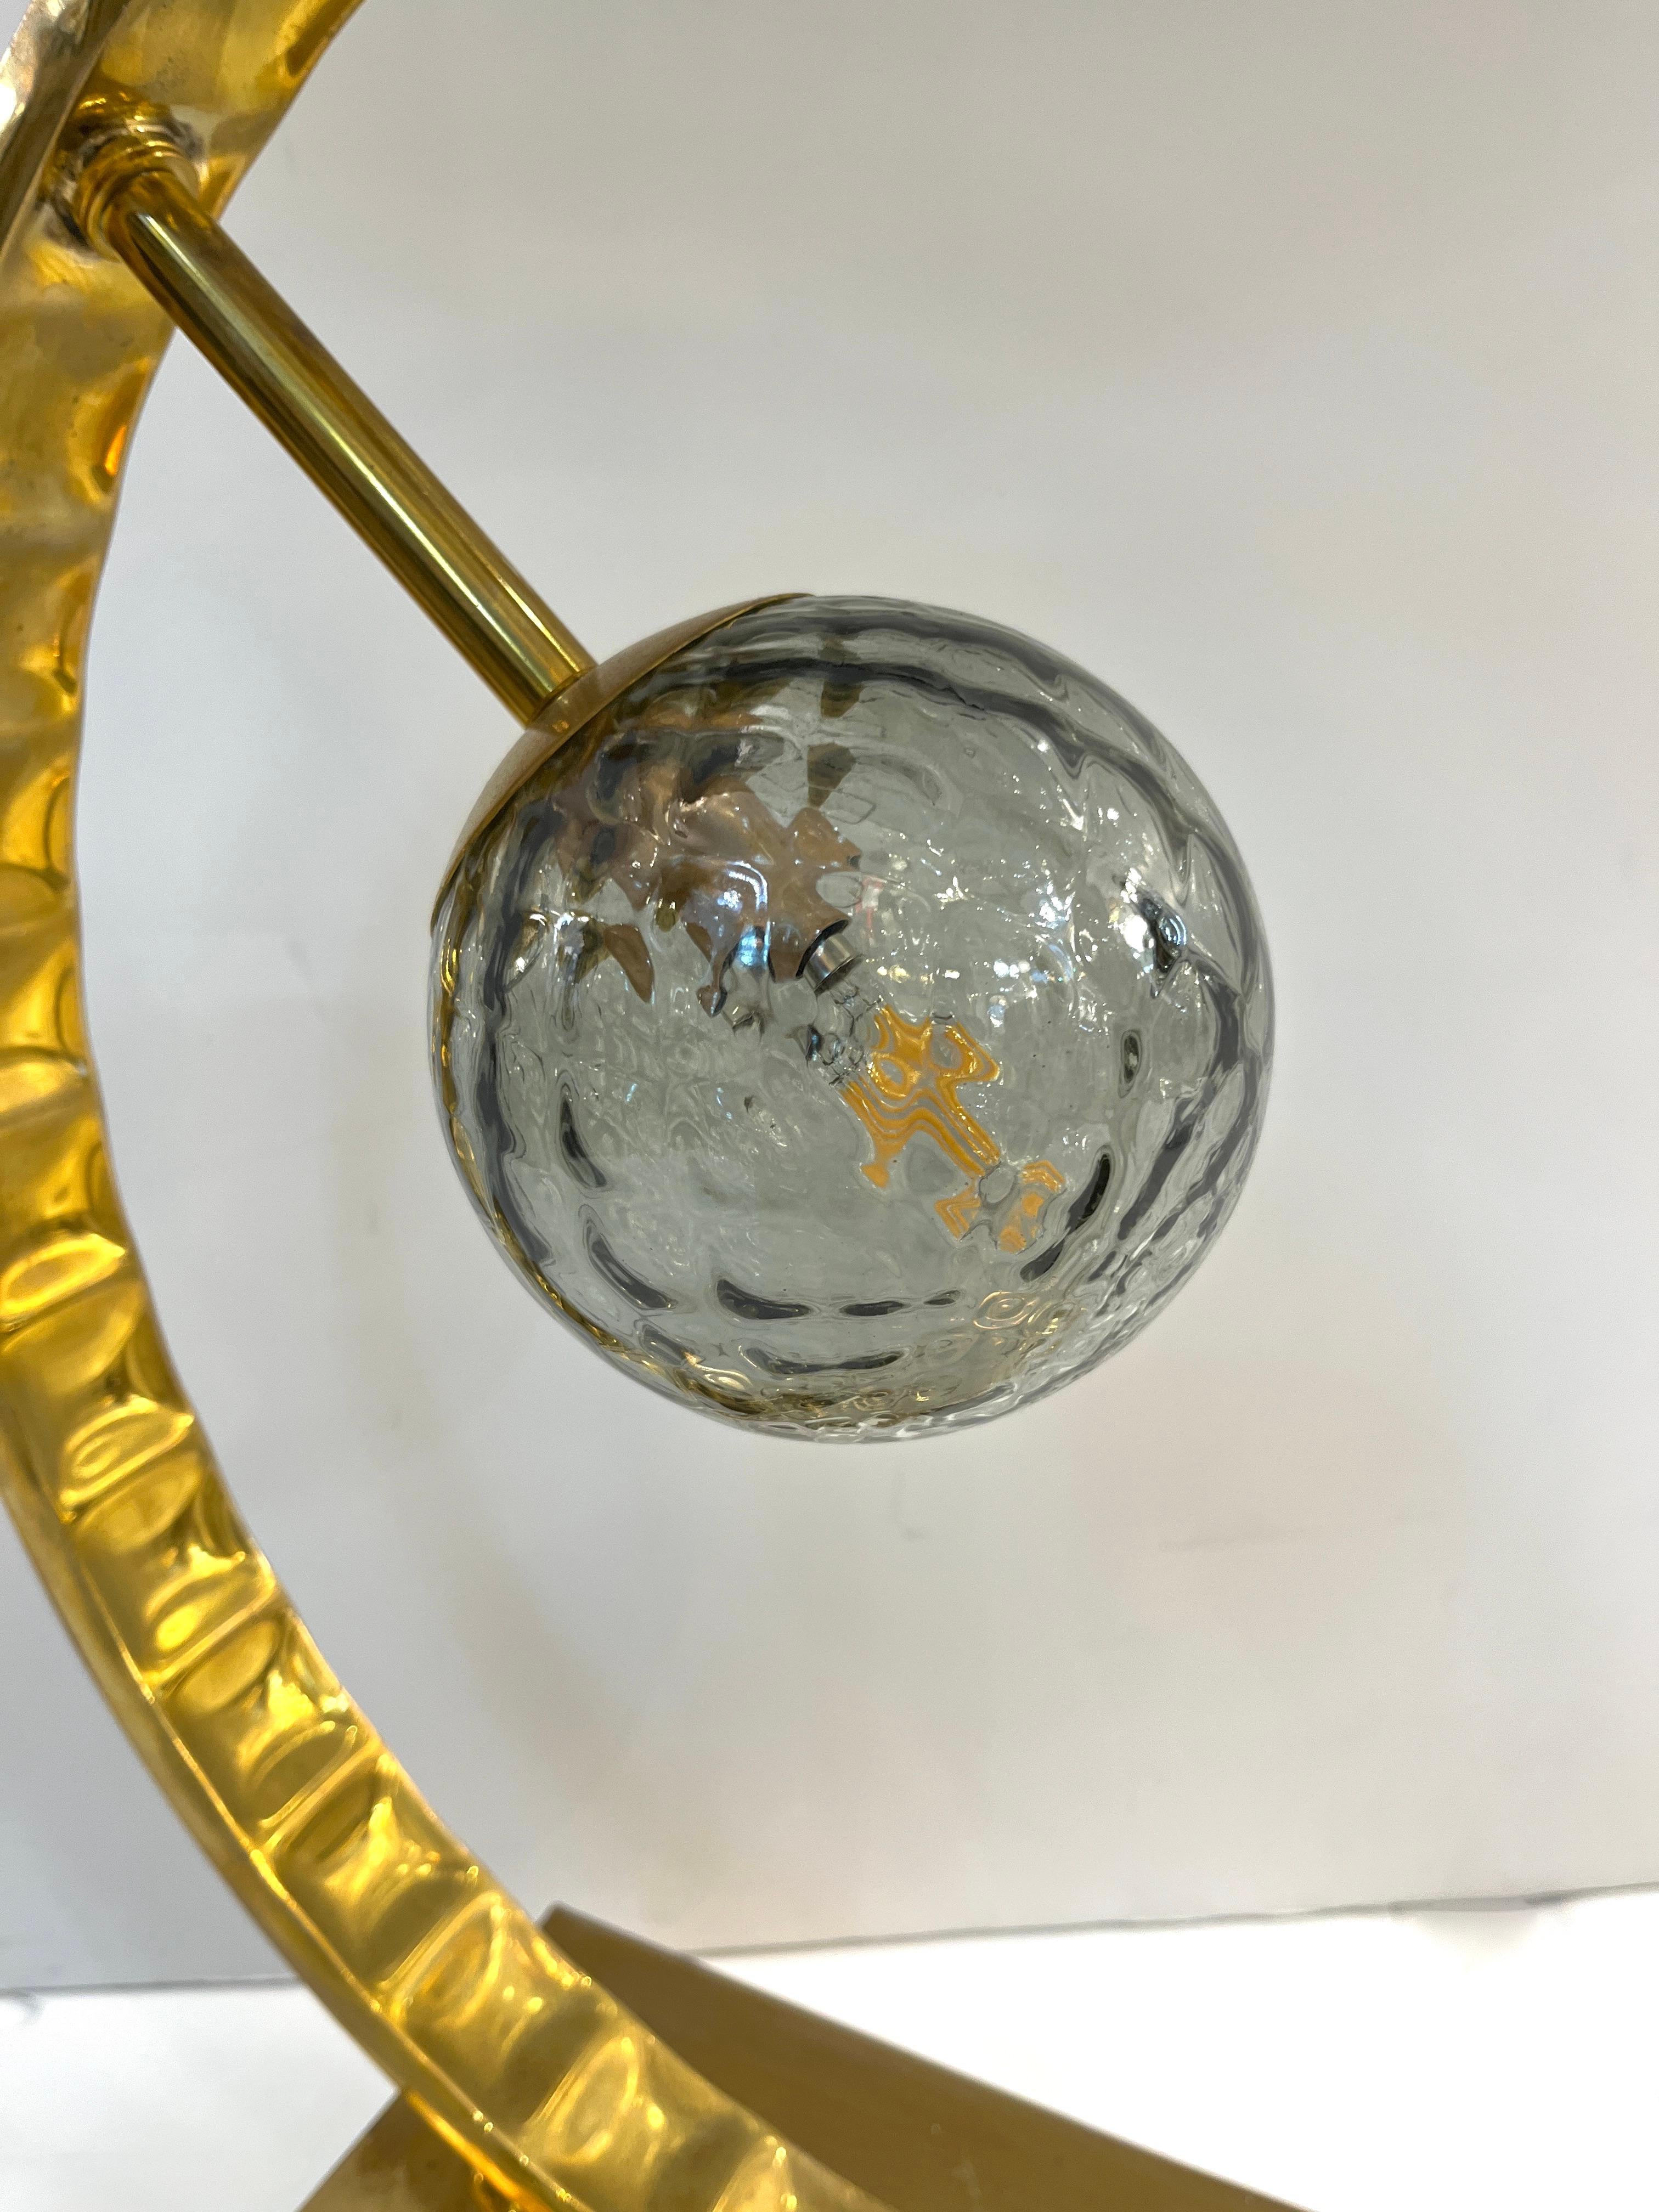 2 Disponibles - Le globe en verre Murano peut être choisi dans différentes couleurs, voir image - Une lampe de table contemporaine très décorative de grande taille, entièrement fabriquée à la main en Italie, avec un design géométrique minimaliste